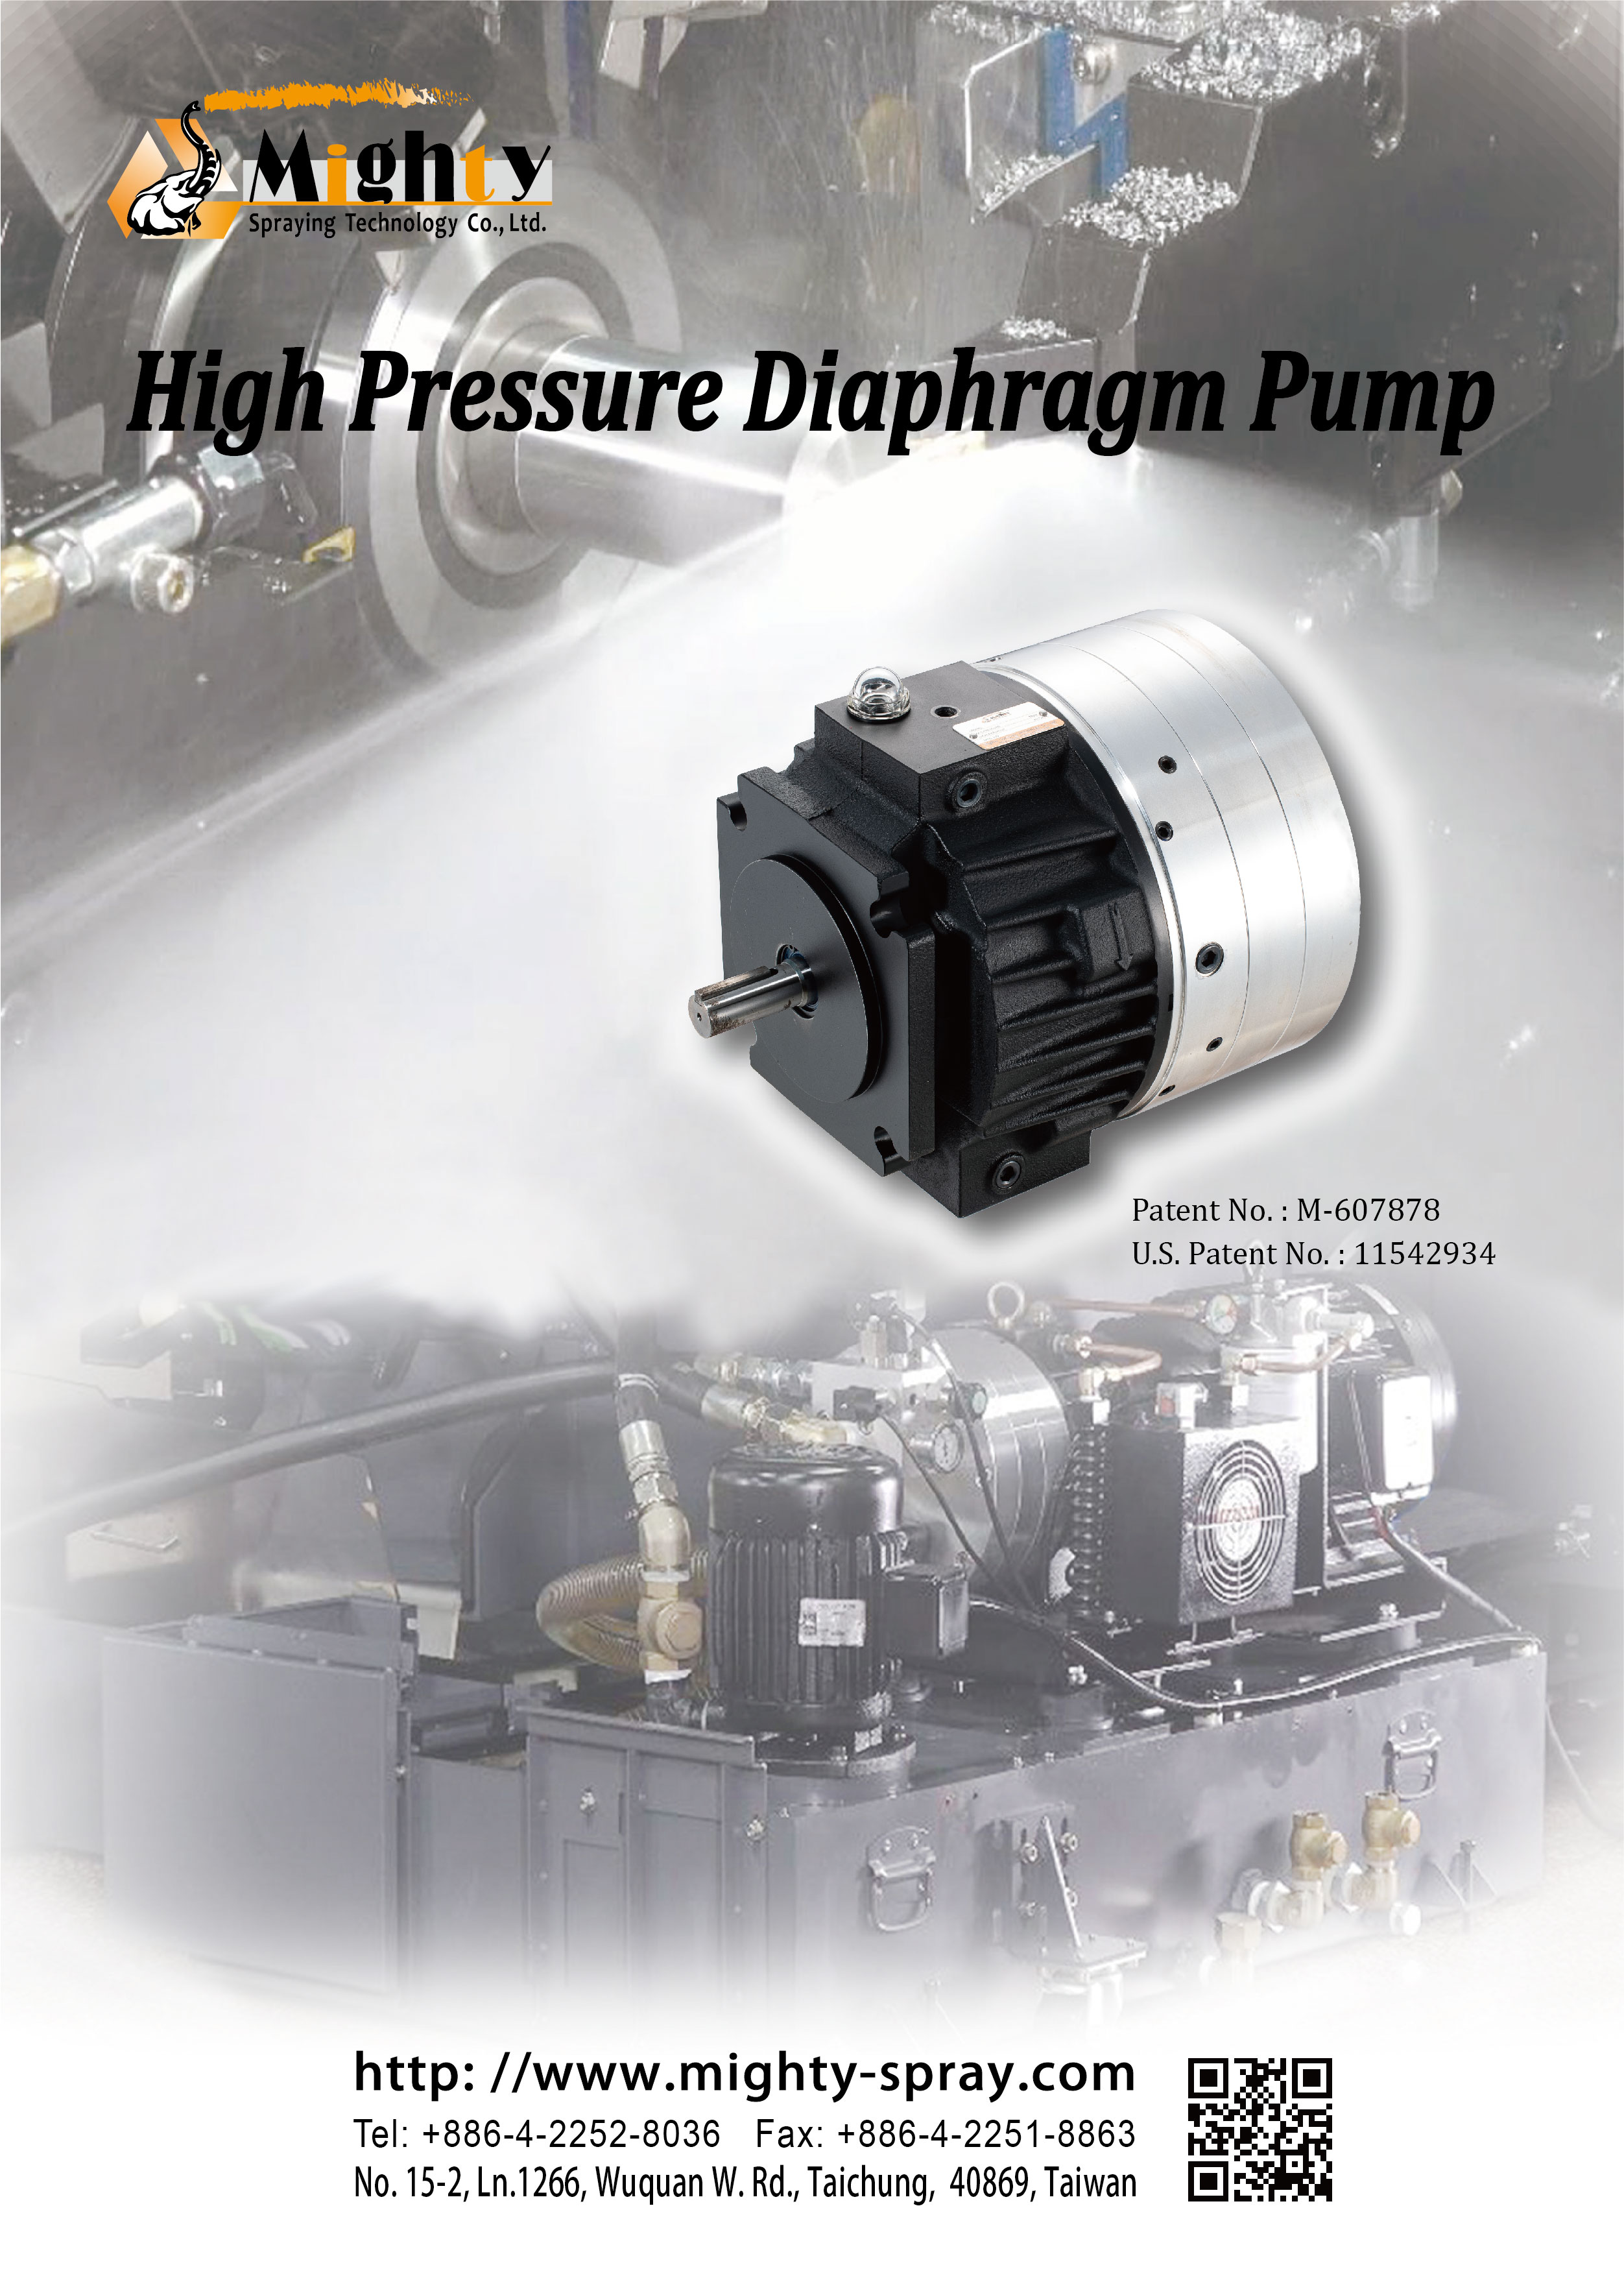 High Pressure Diaphragm Pump